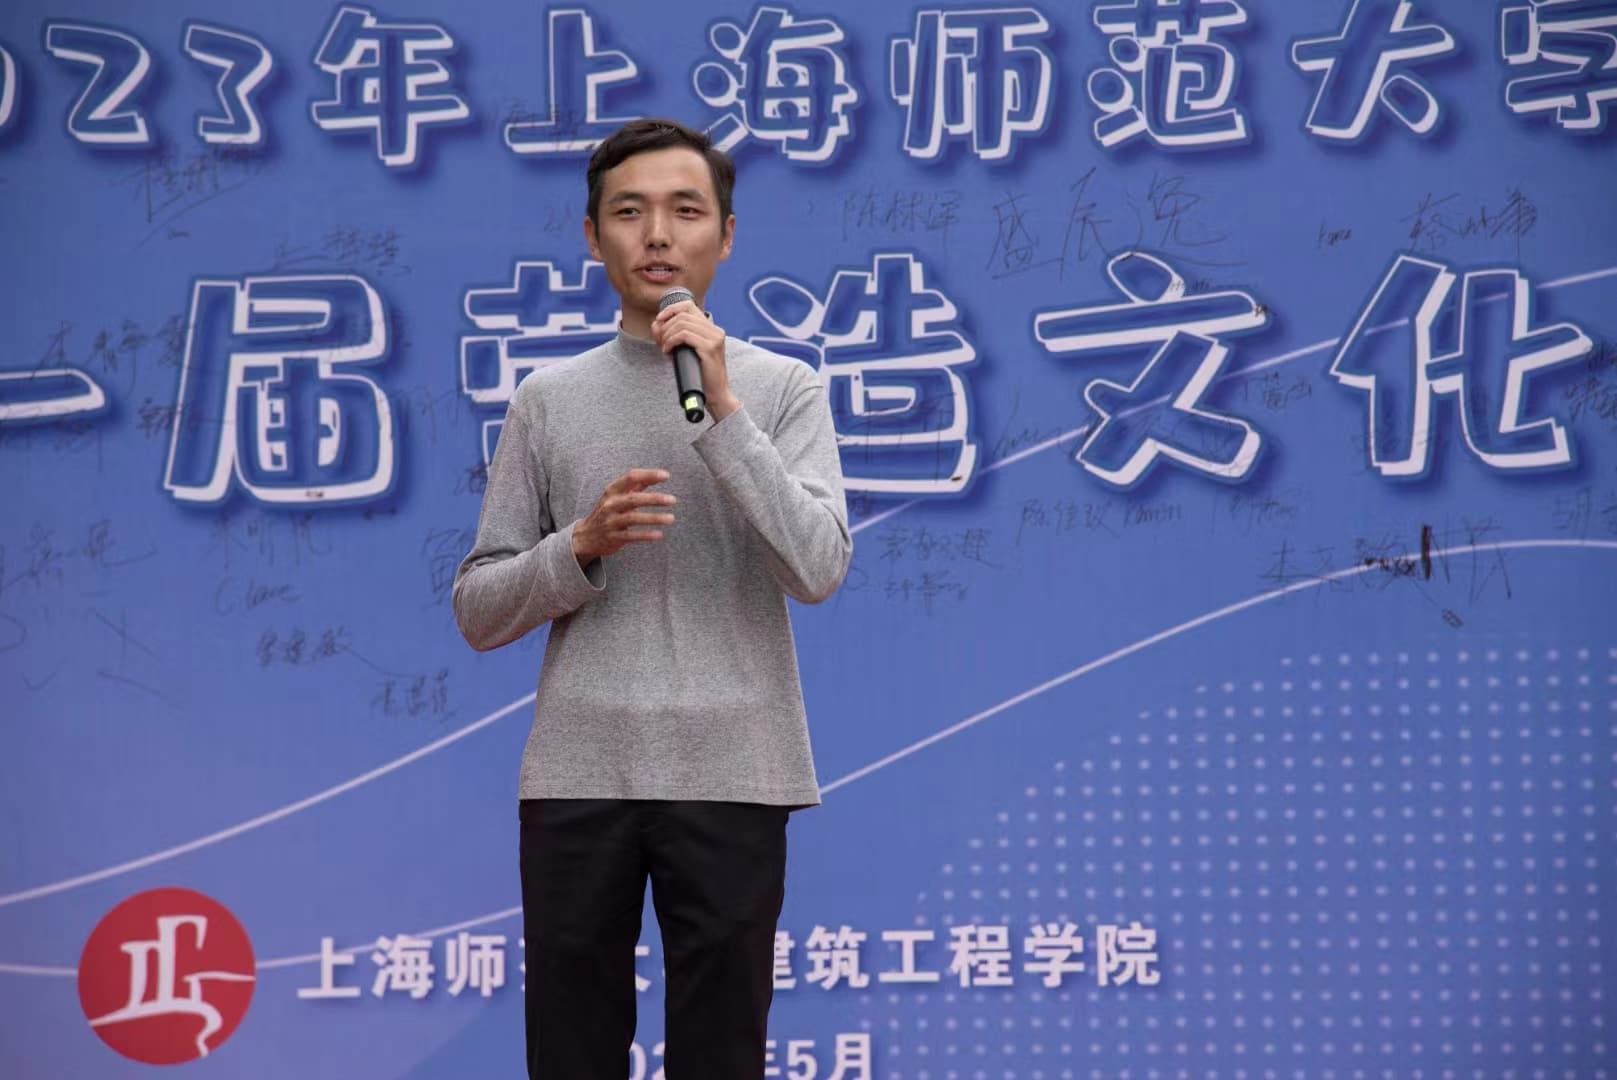 上海师范大学第一届营造文化节 董翰林